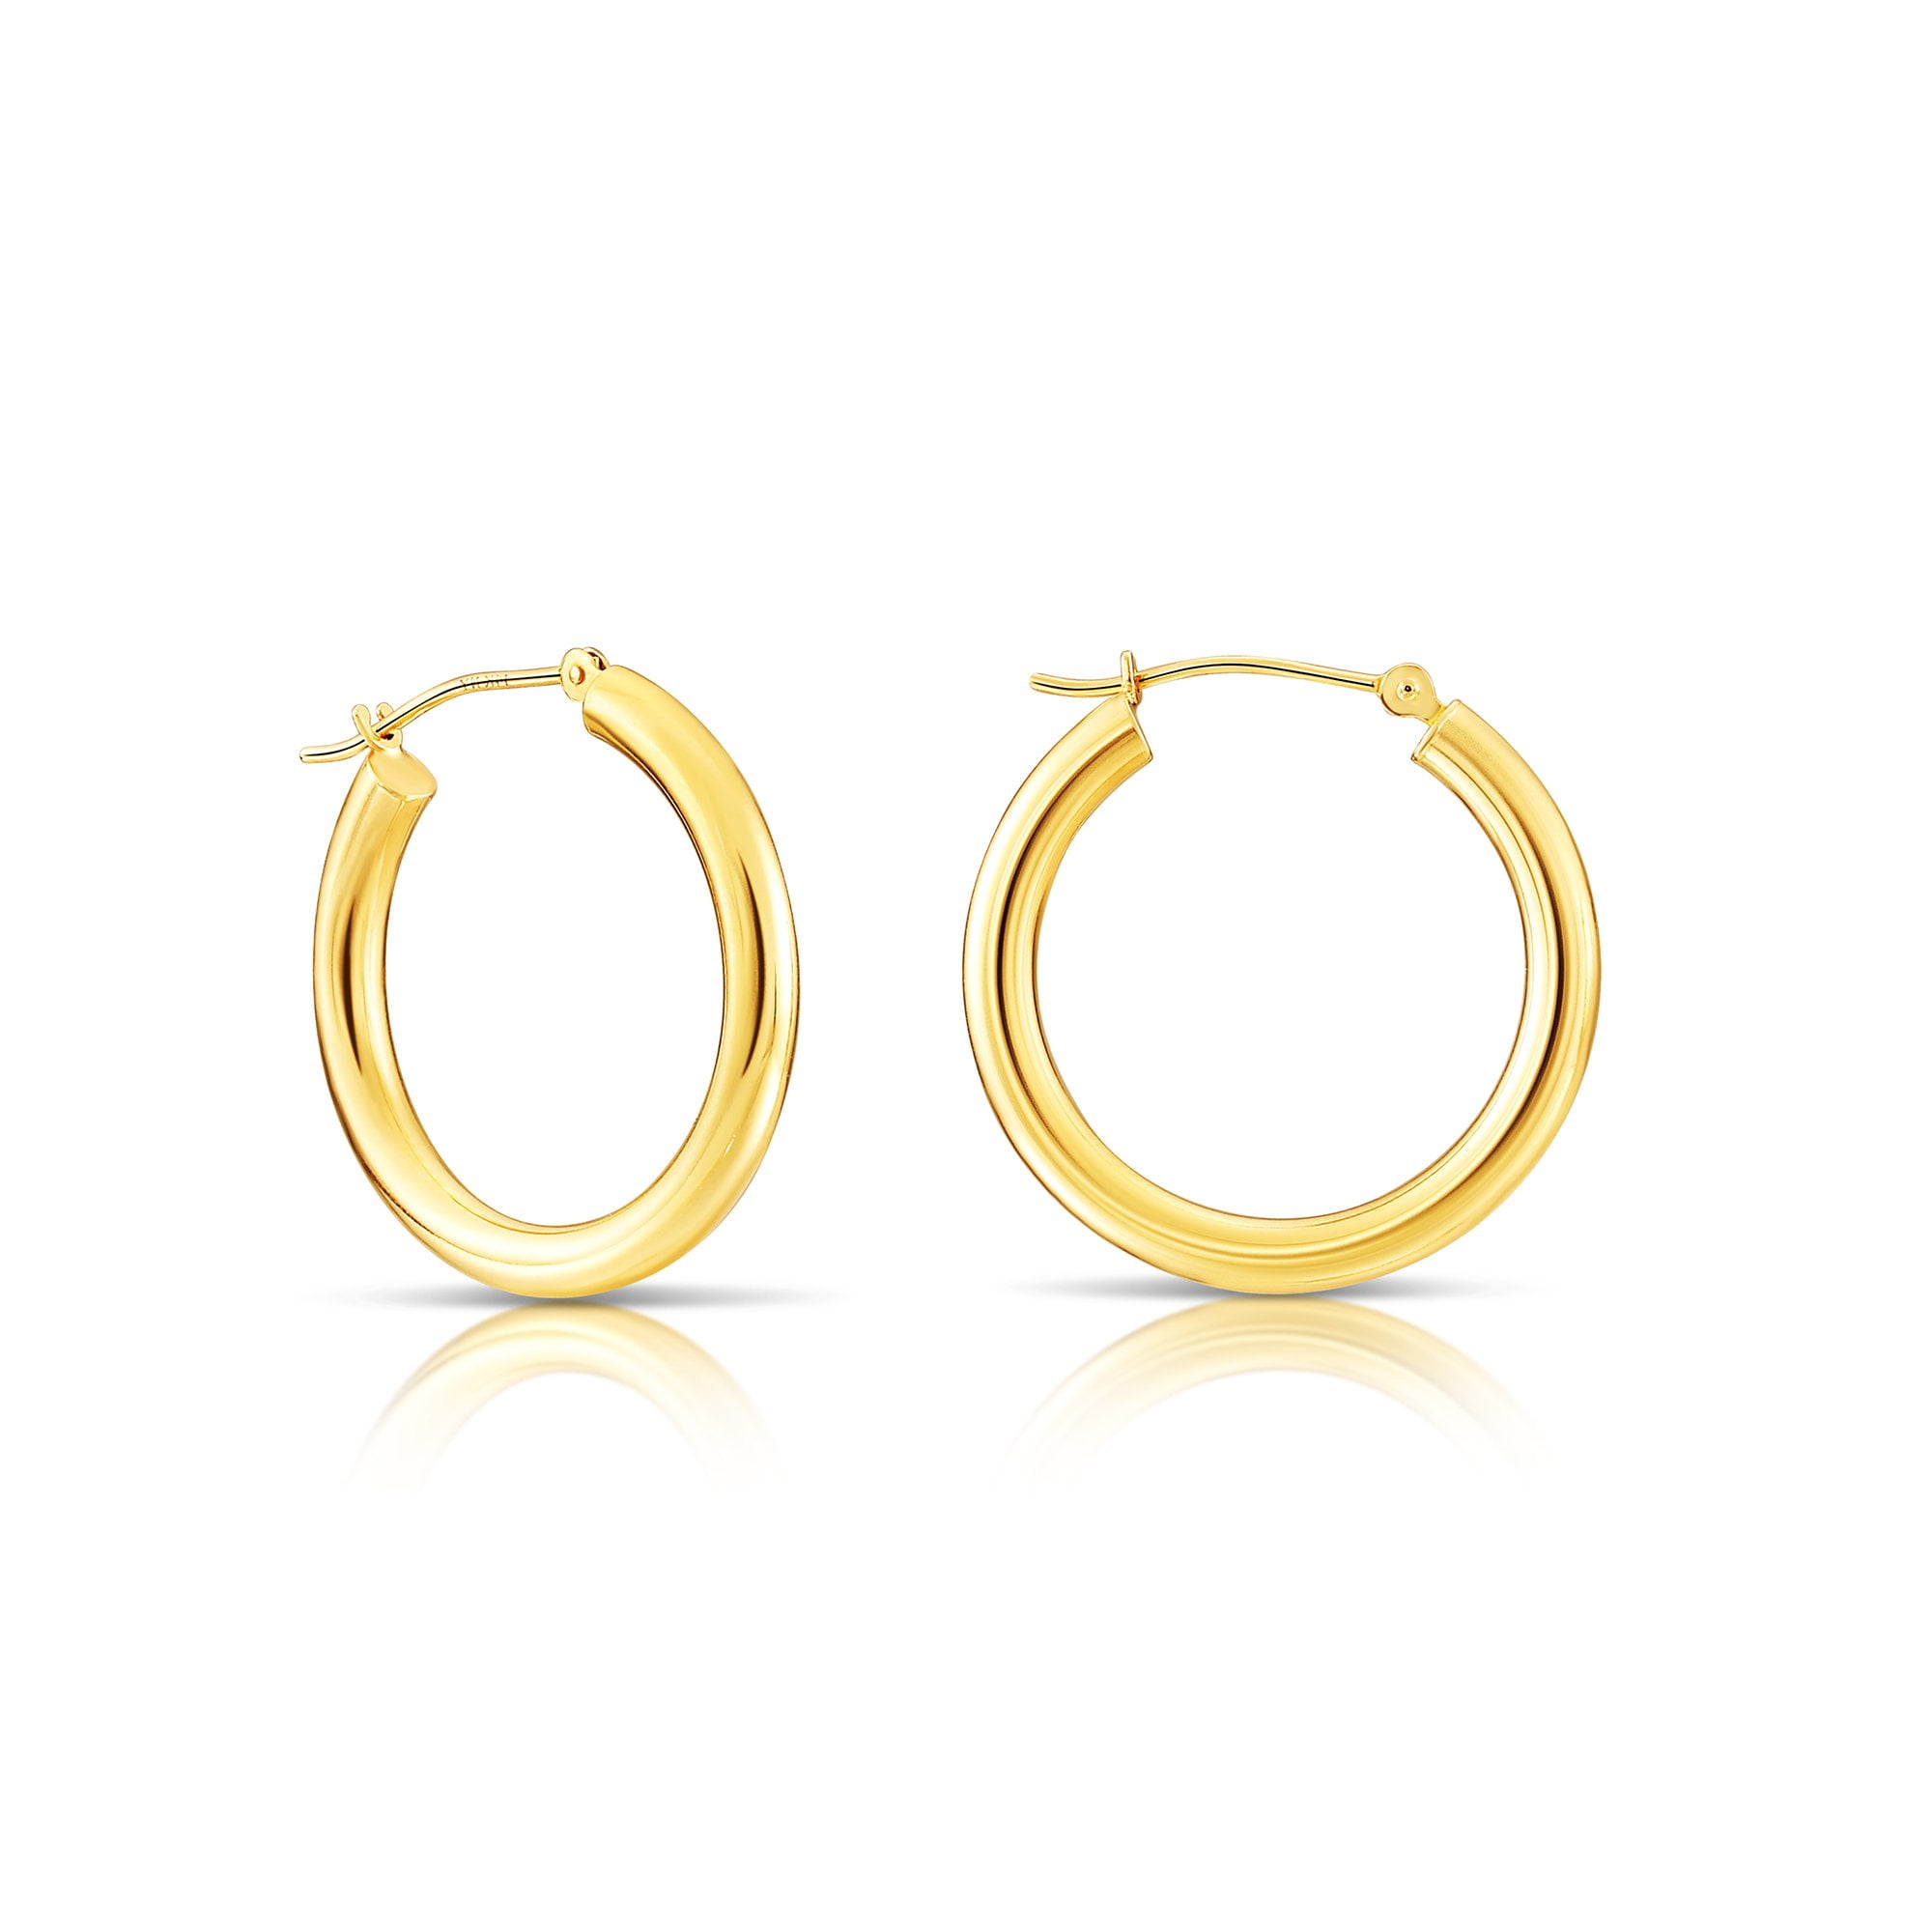 20 to 24mm 2.75 mm Oval Tube Hoop Earrings in Genuine 14k Rose Gold